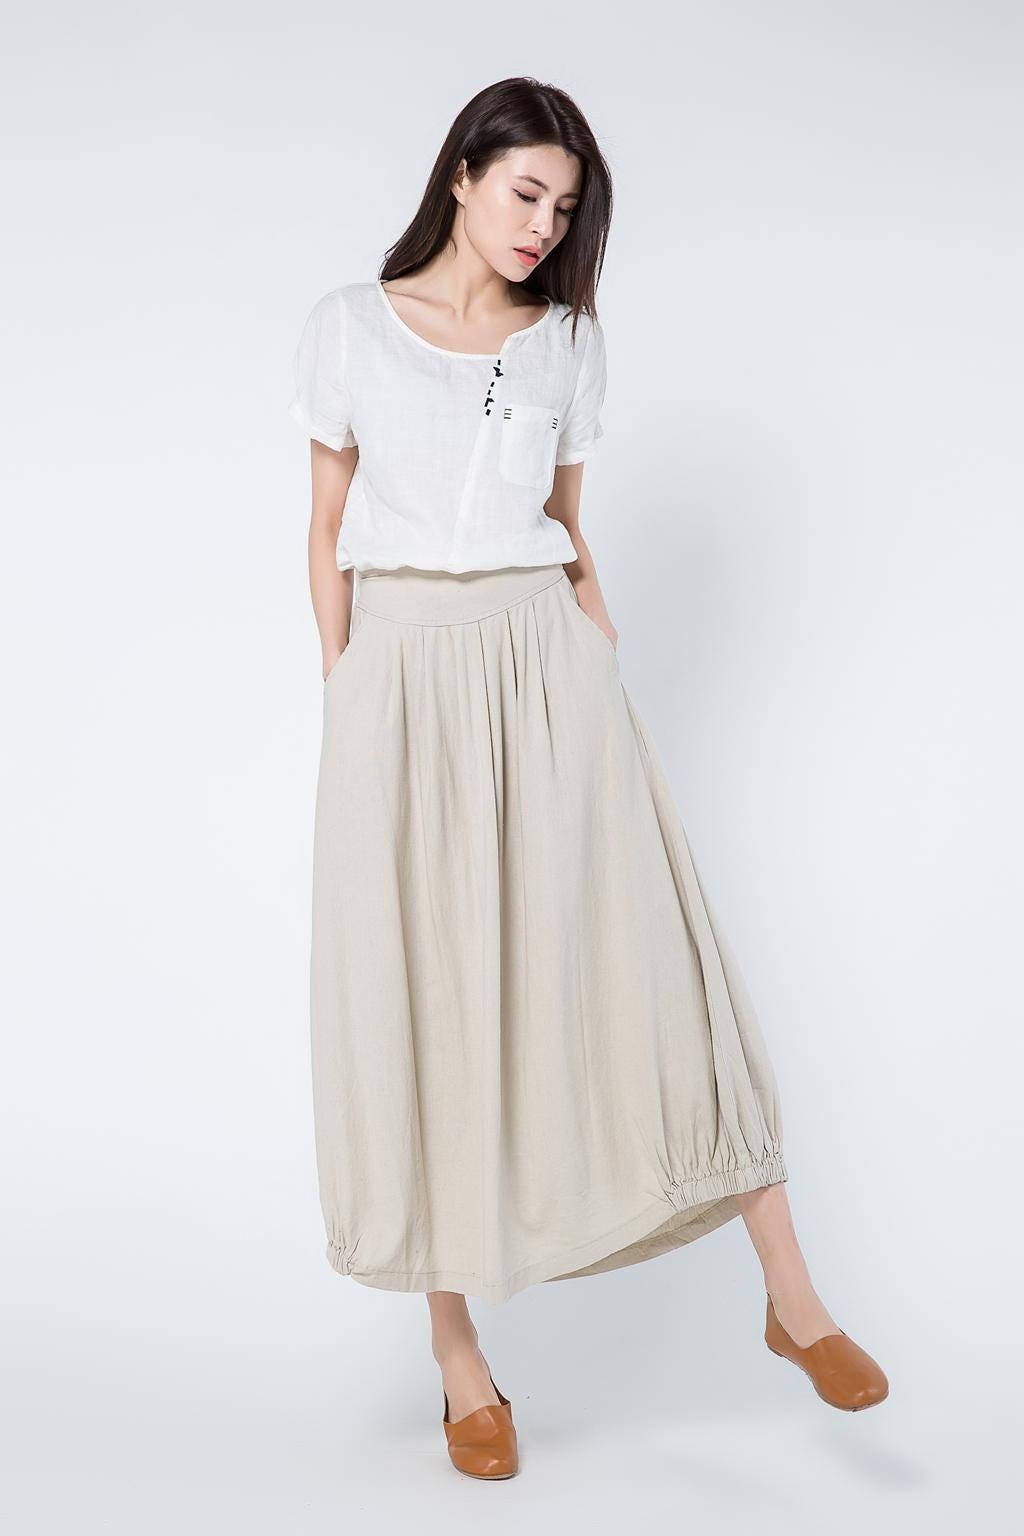 beige linen skirts full length skirt linen skirt long linen